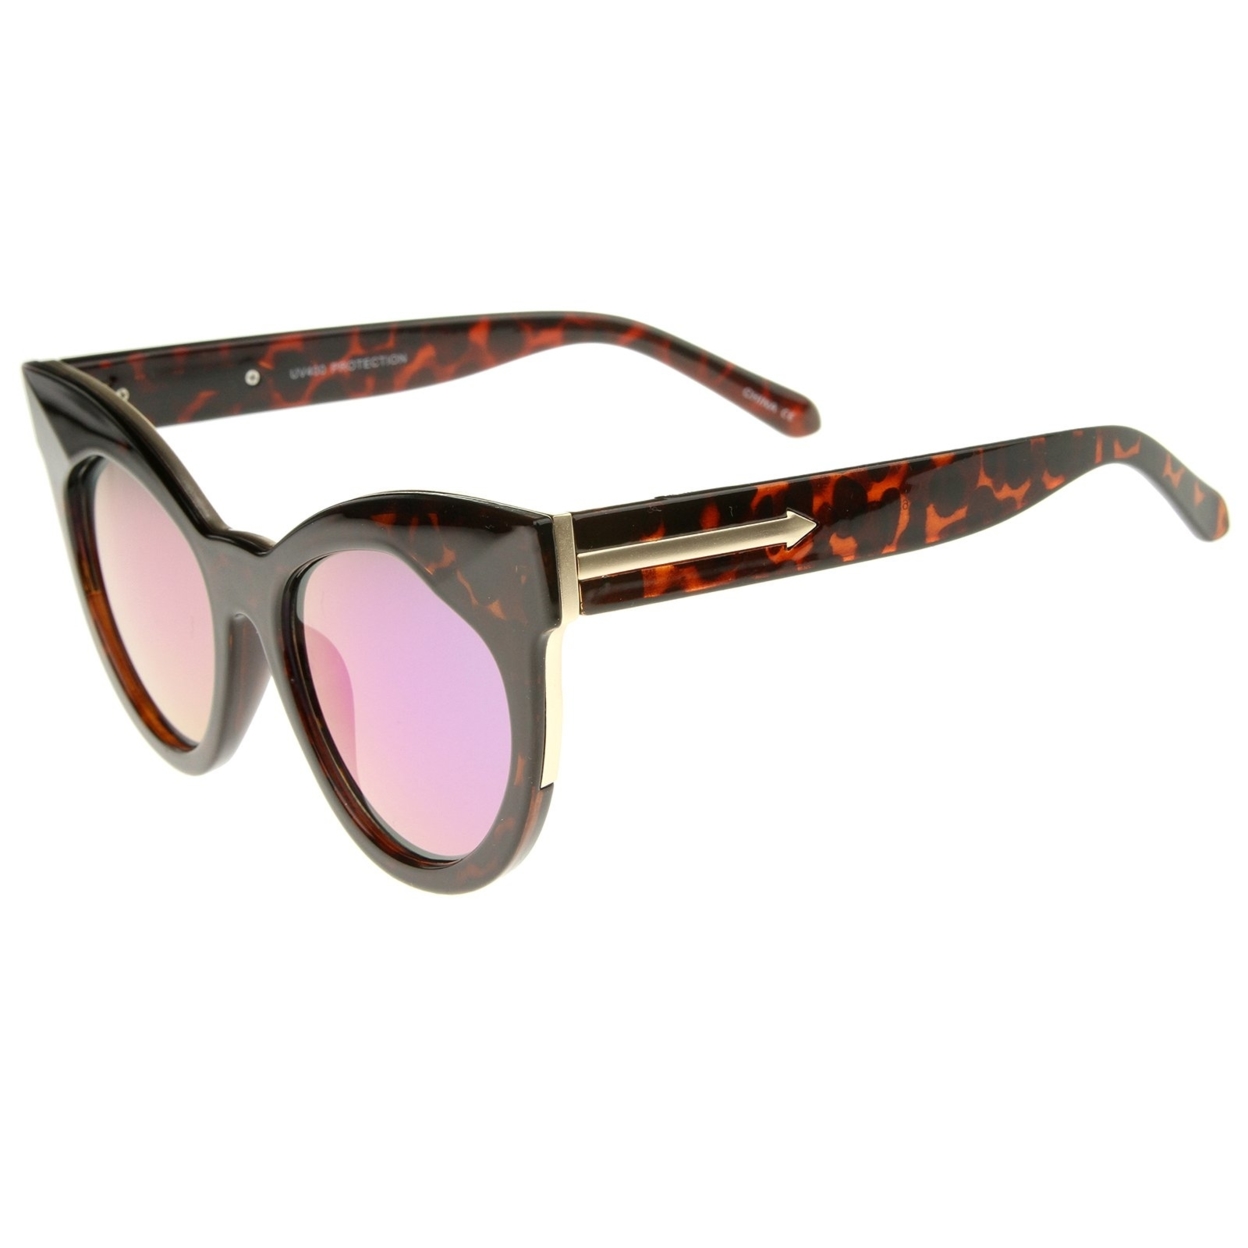 Women's Oversize Chunky Frame Iridescent Lens Cat Eye Sunglasses 55mm - Black / Blue Mirror